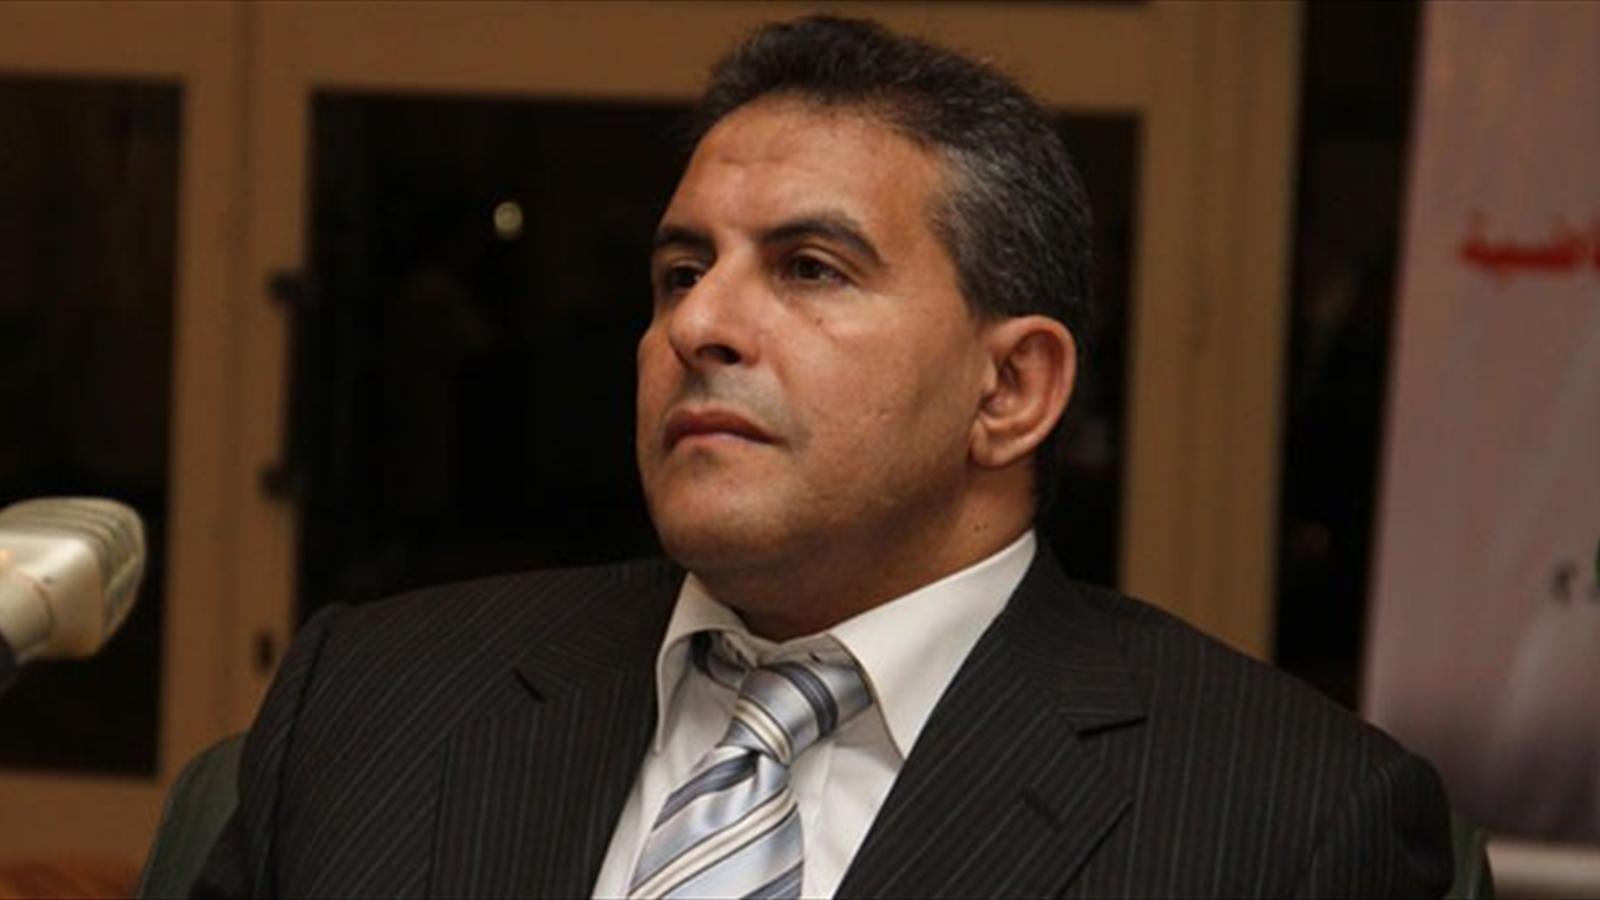 أبو المجد: طاهر أبو زيد رئيسًا لائتلاف “دعم مصر” بديلًا لسيف اليزل